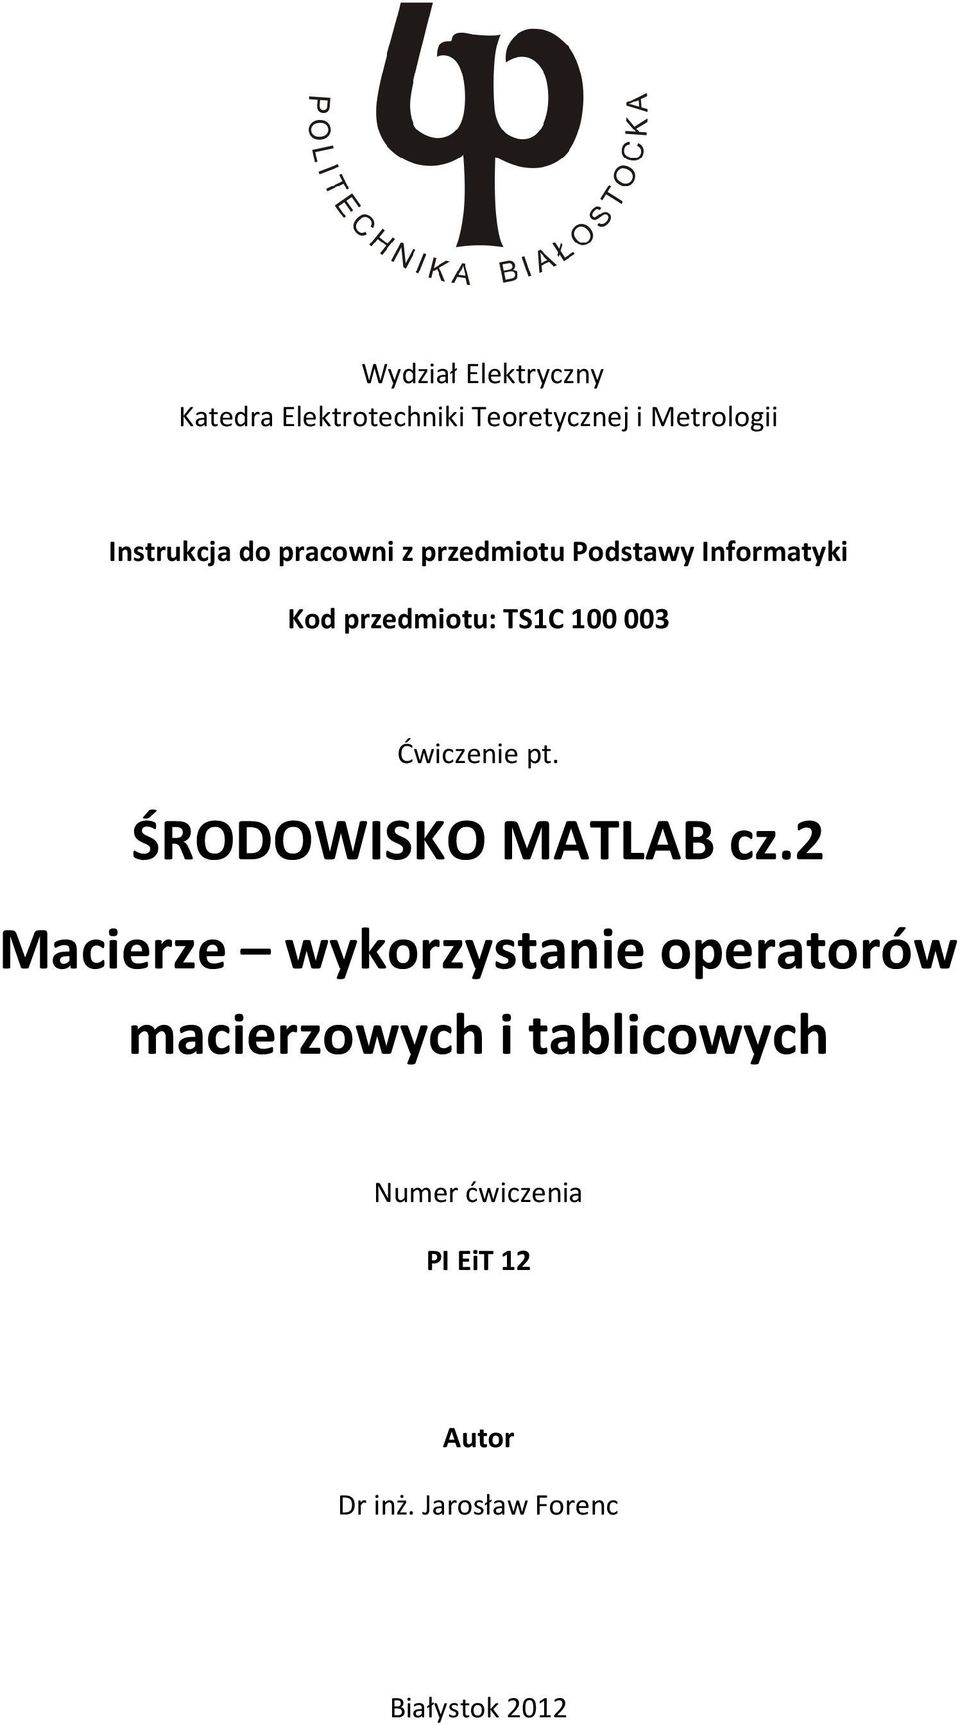 Ćwiczenie pt. ŚRODOWISKO MATLAB cz.